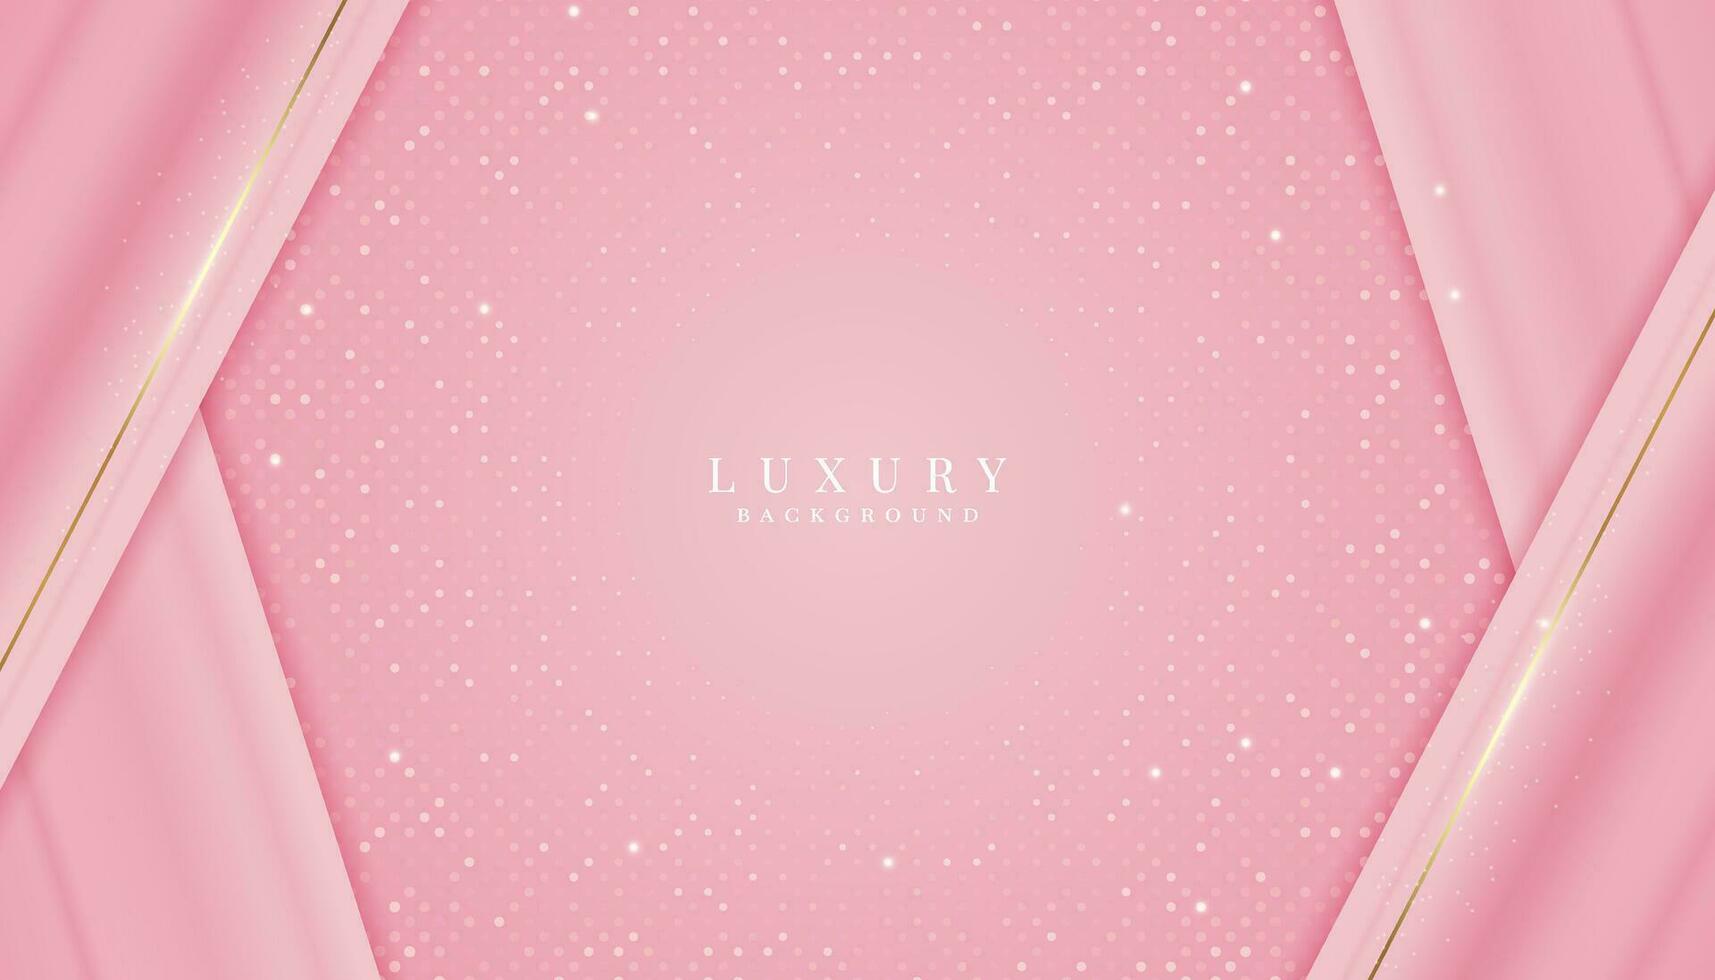 lussuoso rosa sfondo con scintillante oro e luccichio. moderno elegante astratto sfondo vettore